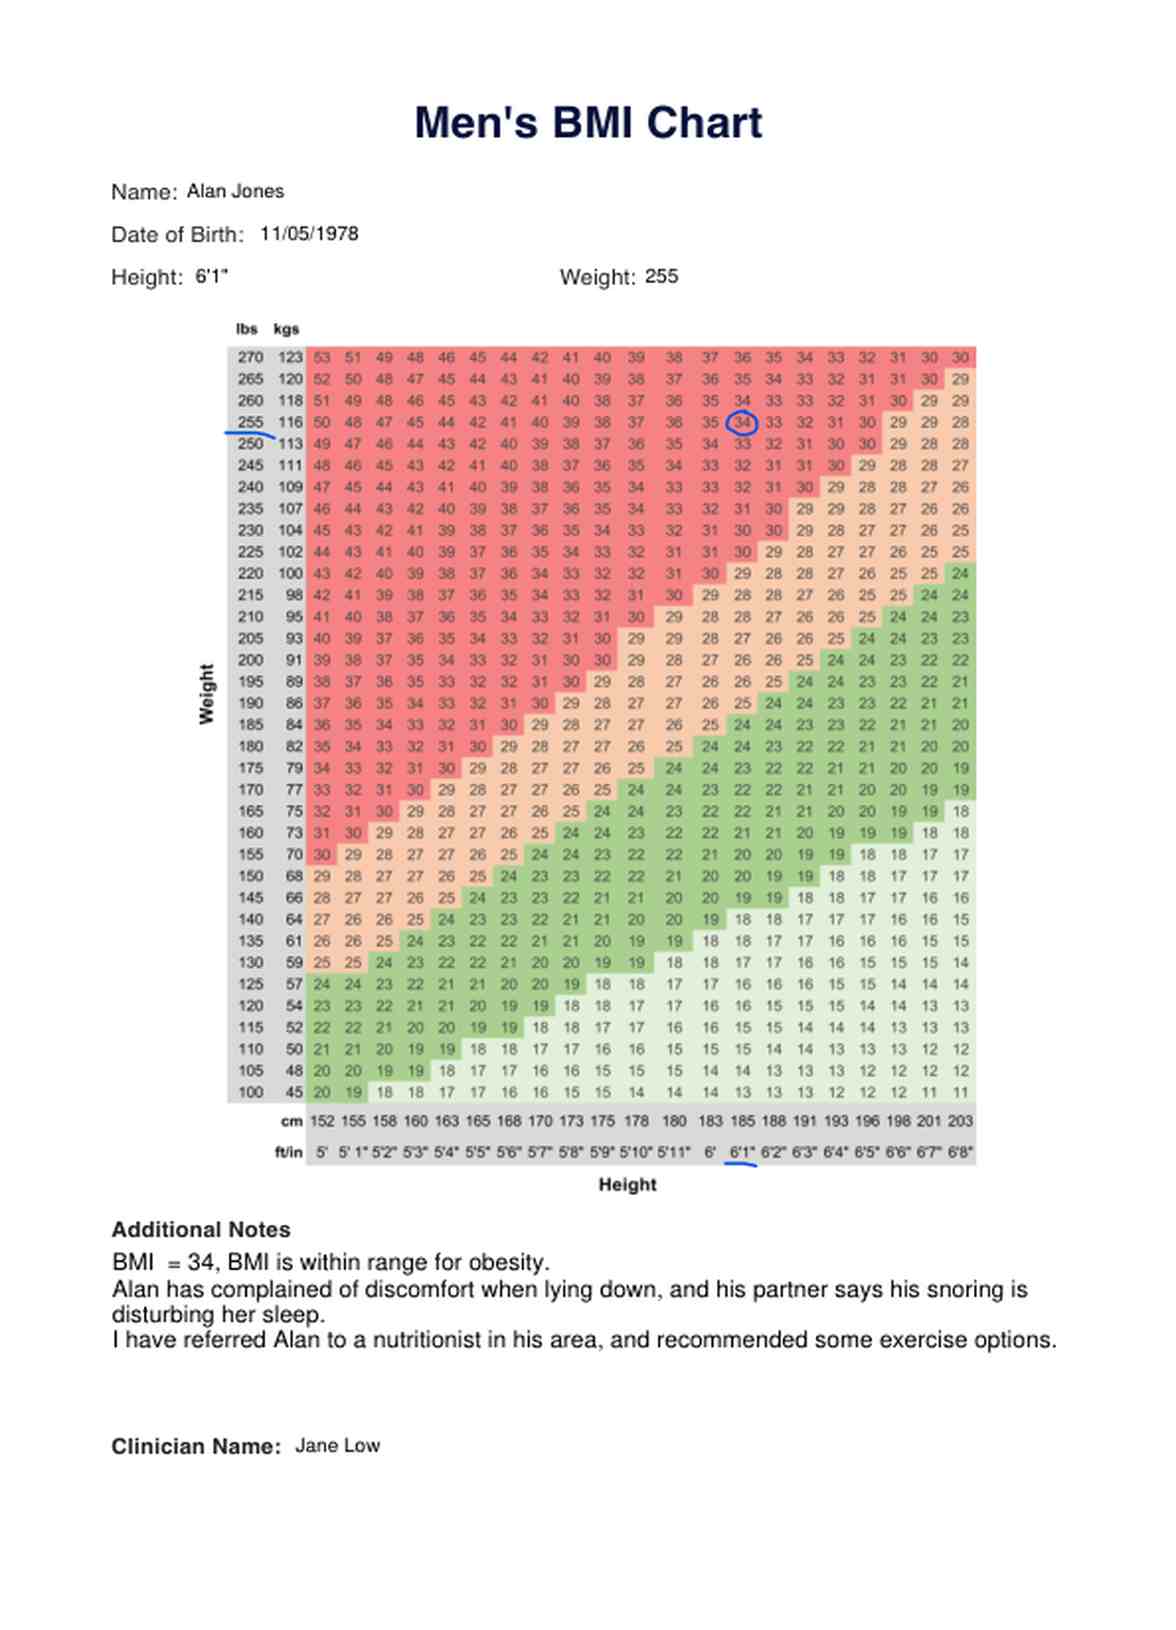 BMI Chart Men PDF Example